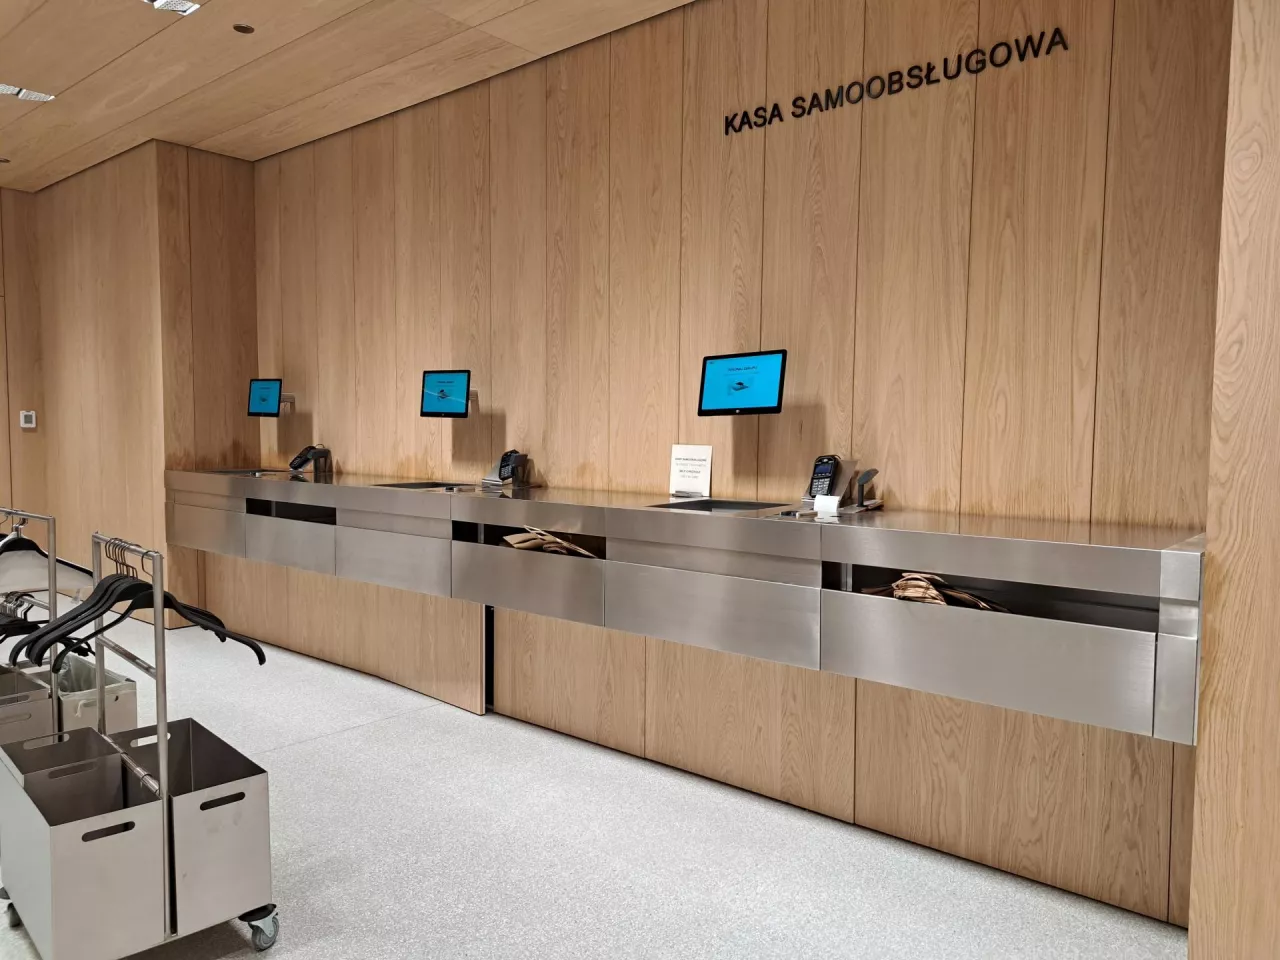 Kasy samoobsługowe w sklepie Zara w galerii Westfield Mokotów (fot. wiadomoscihandlowe.pl)